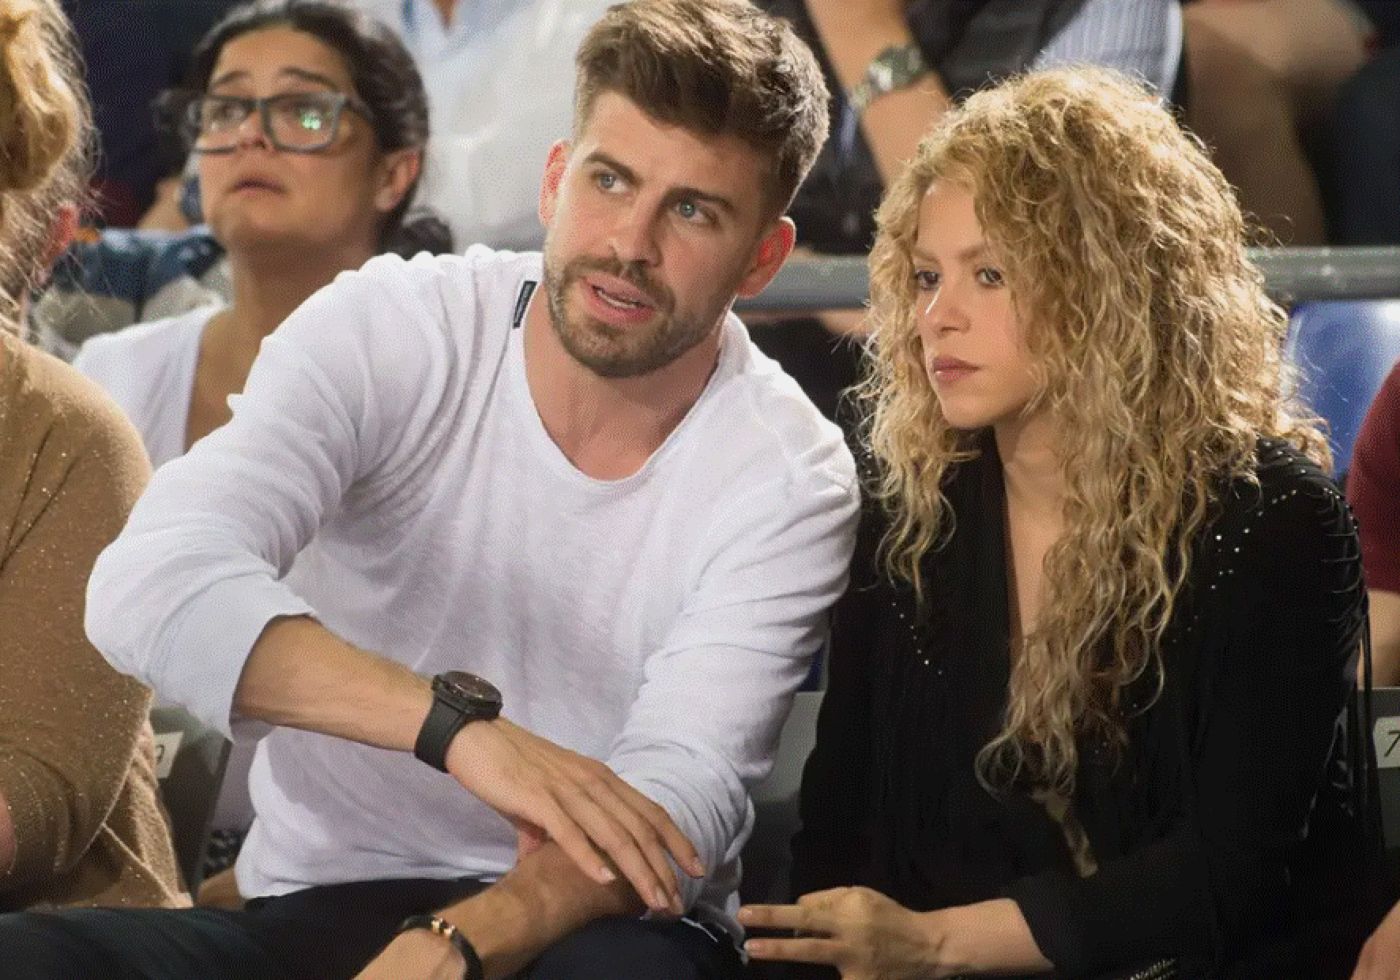 Incredibil ce a pățit Shakira când a aflat că Pique o înșeală. Jurnaliștii spanioli aruncă bomba